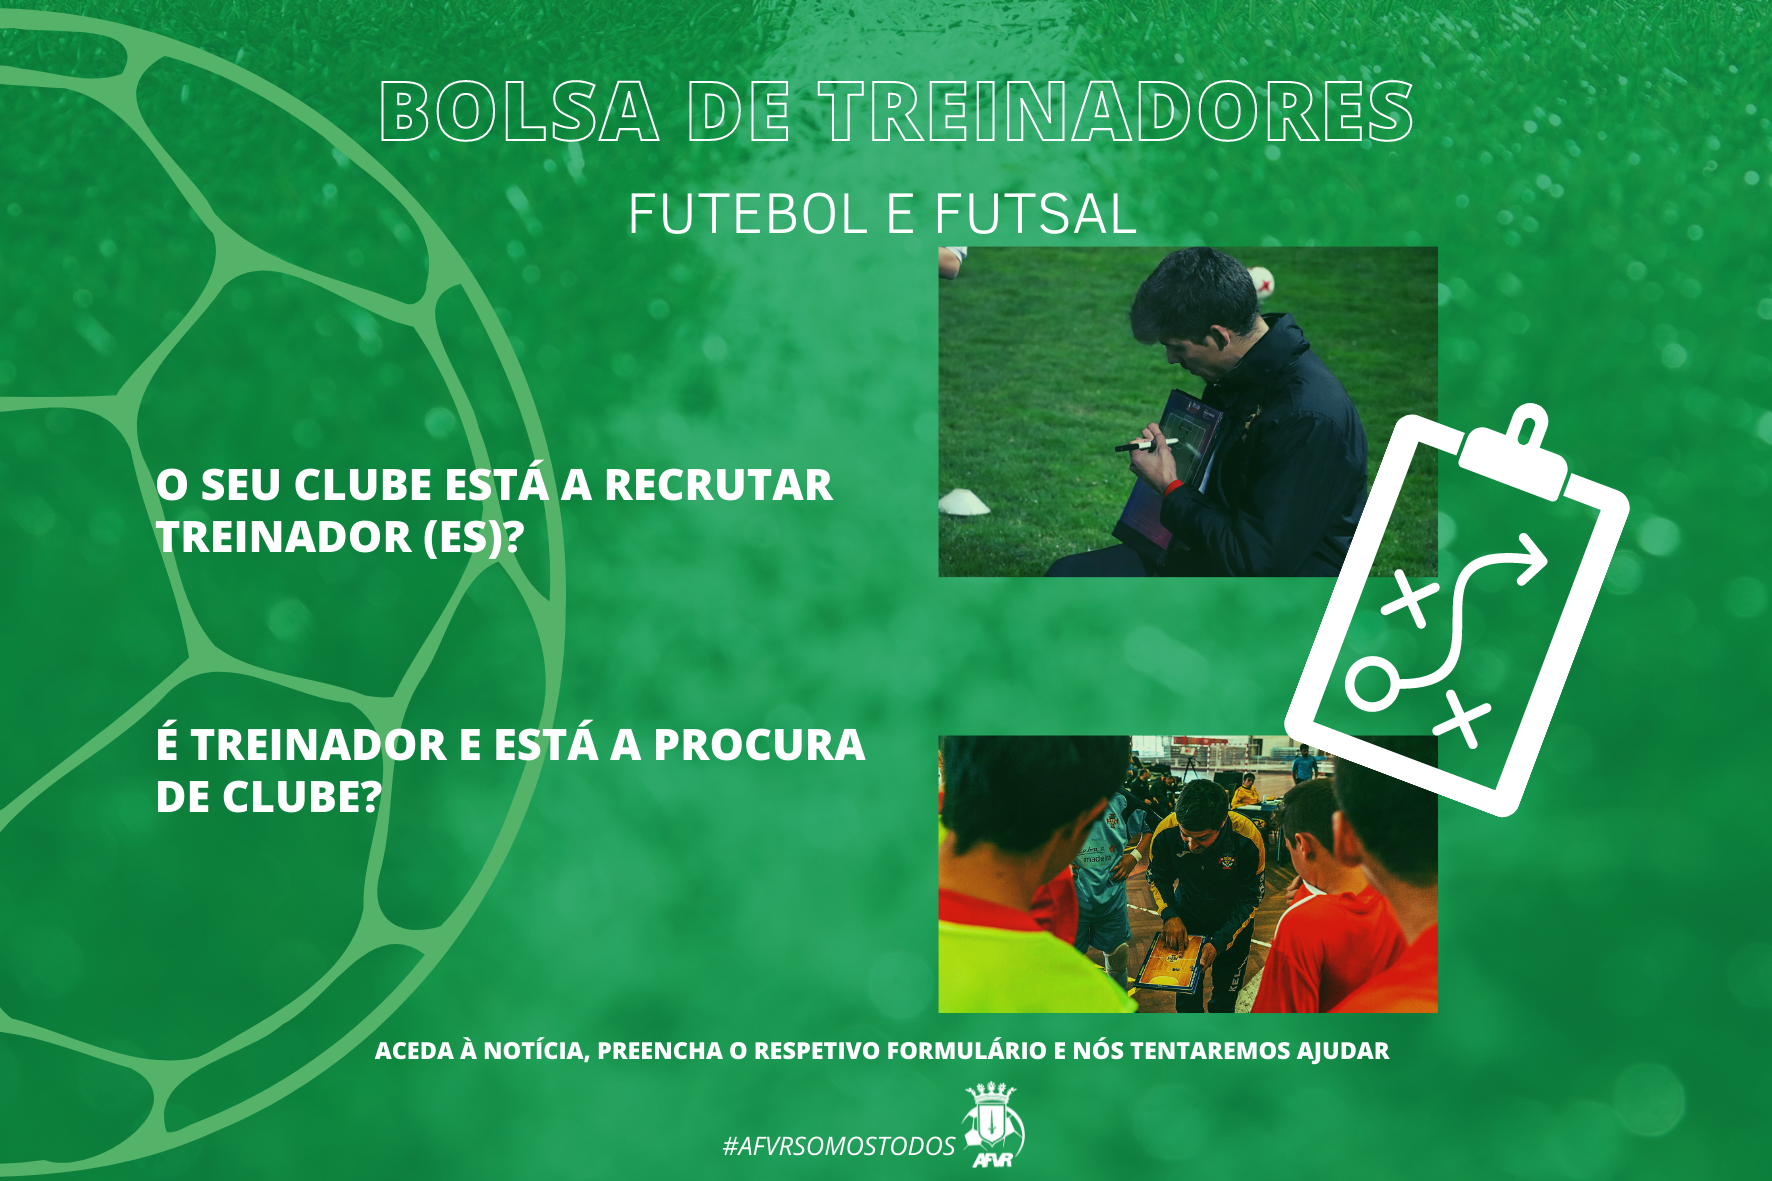 BOLSA DE TREINADORES | Futebol e Futsal